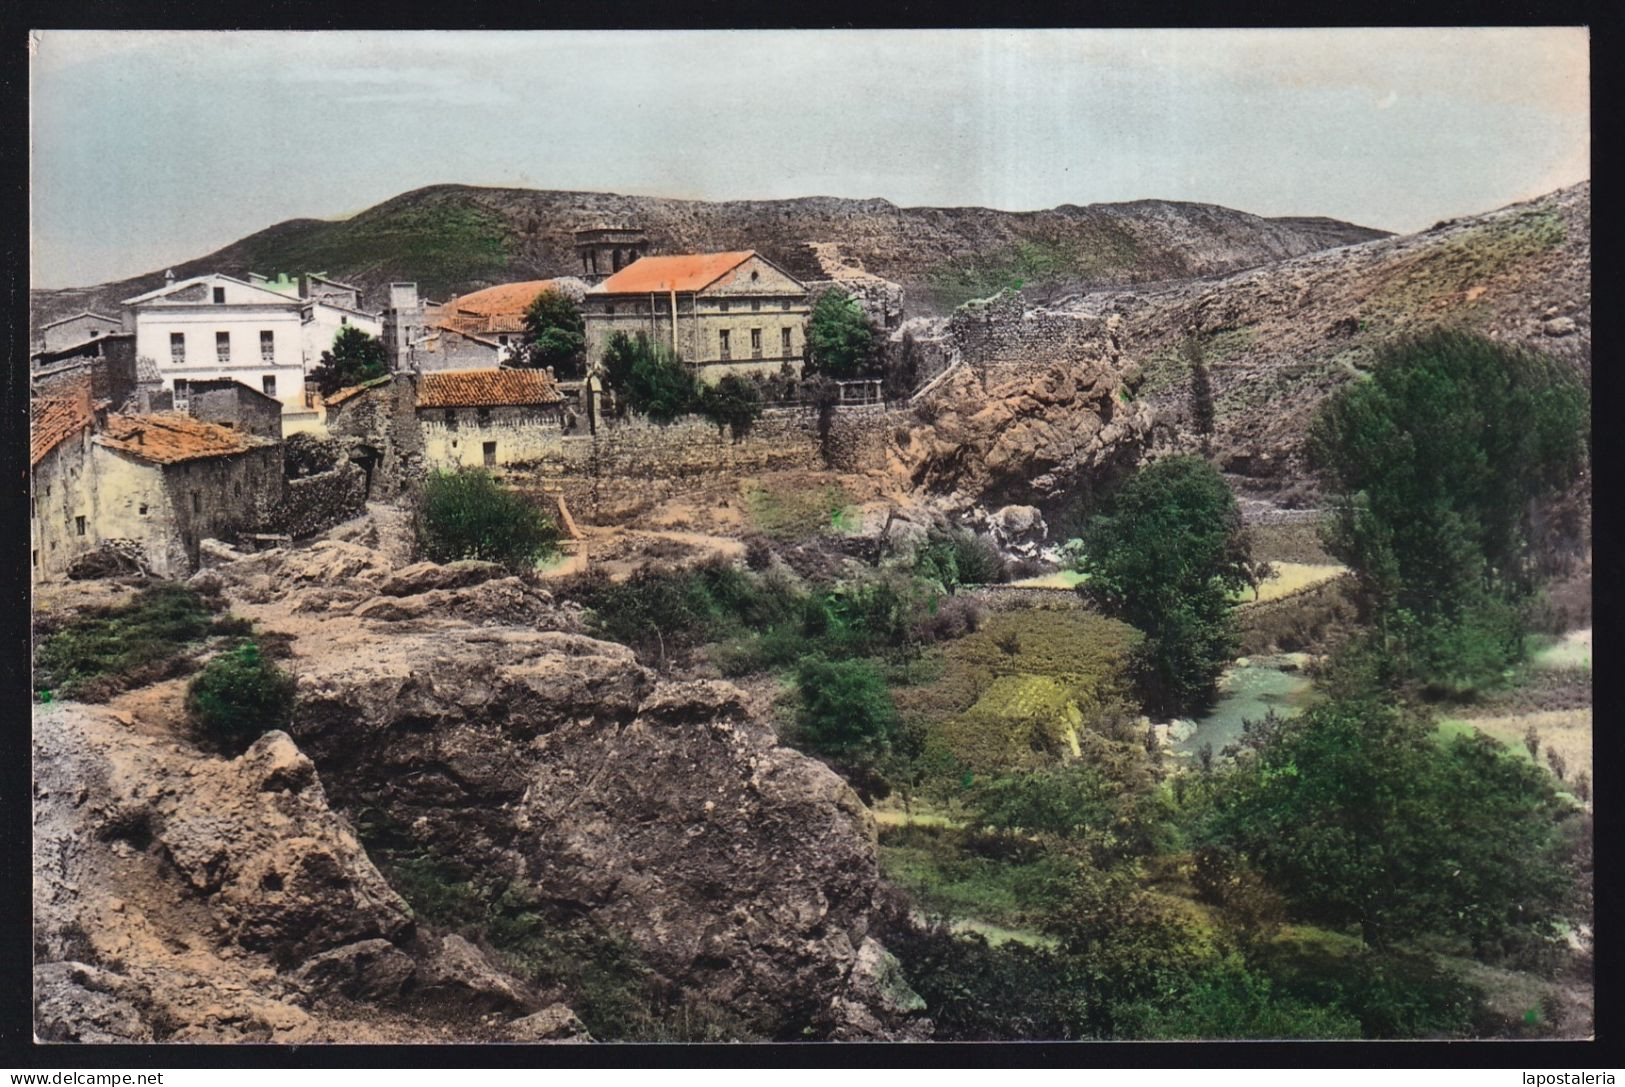 Manzanera. *Ruinas Del Castillo* Circulada Valores 1960. - Teruel